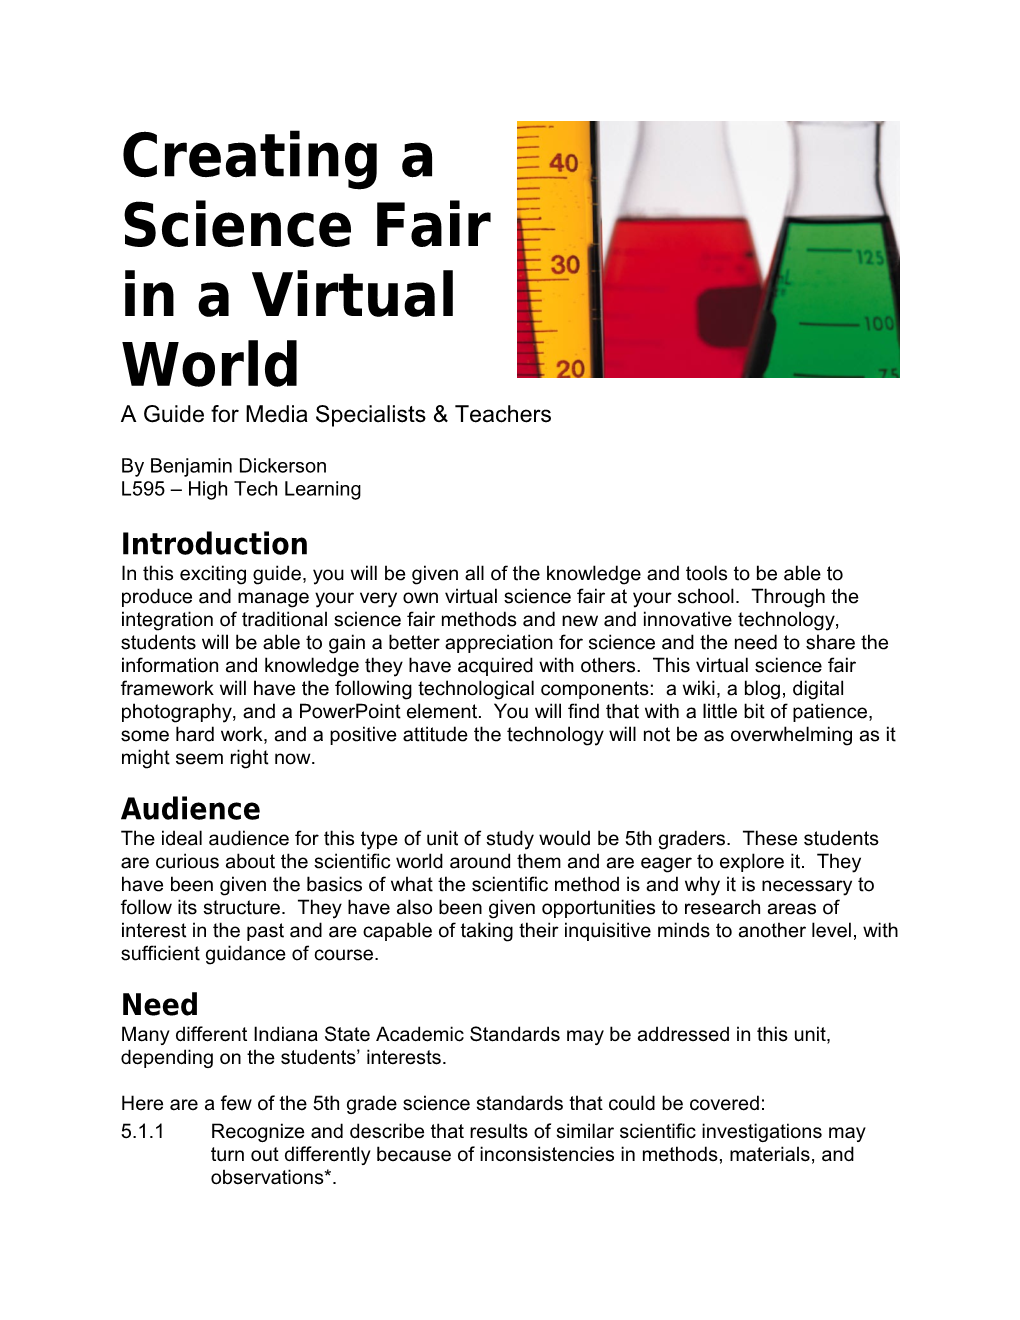 Creating a Science Fair in a Virtual World